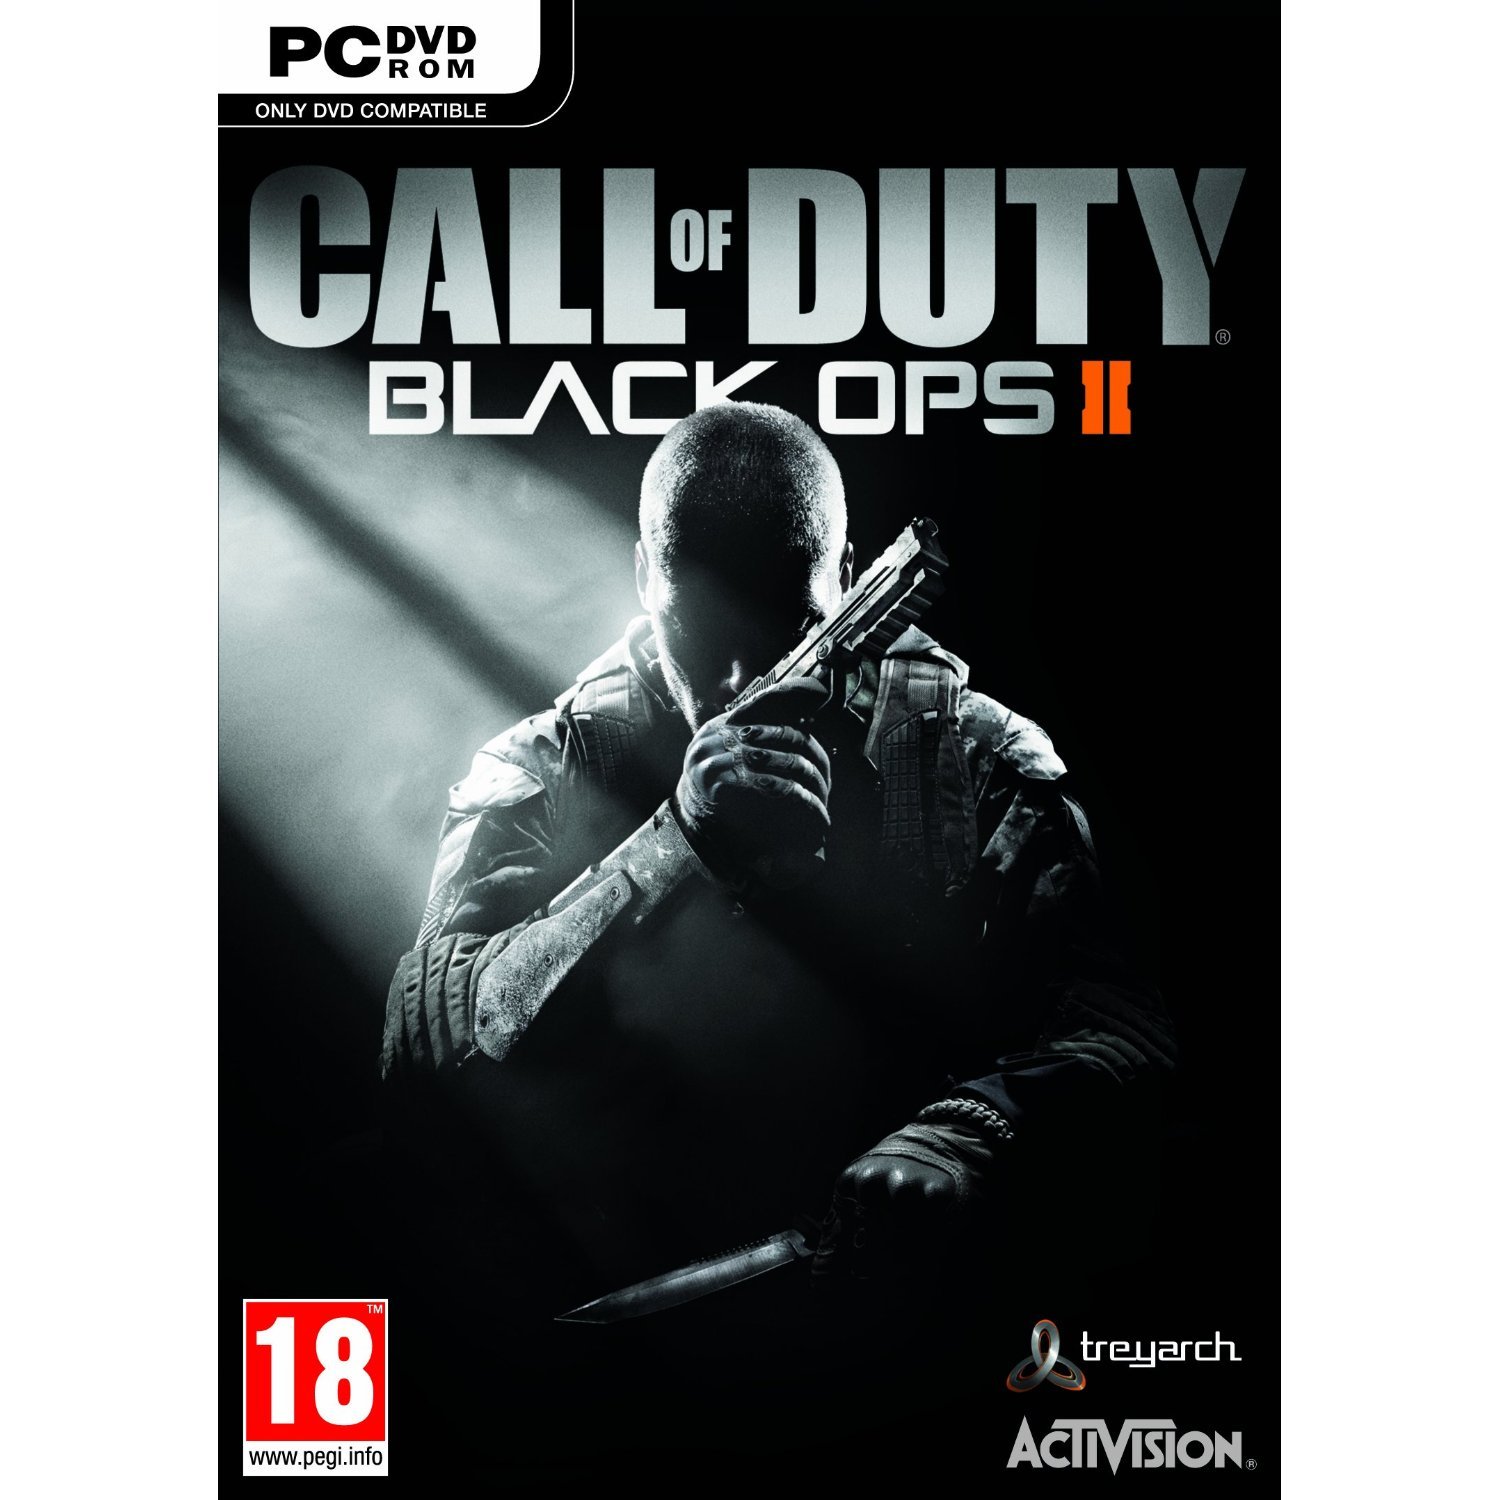 Call of Duty: Black Ops II Full